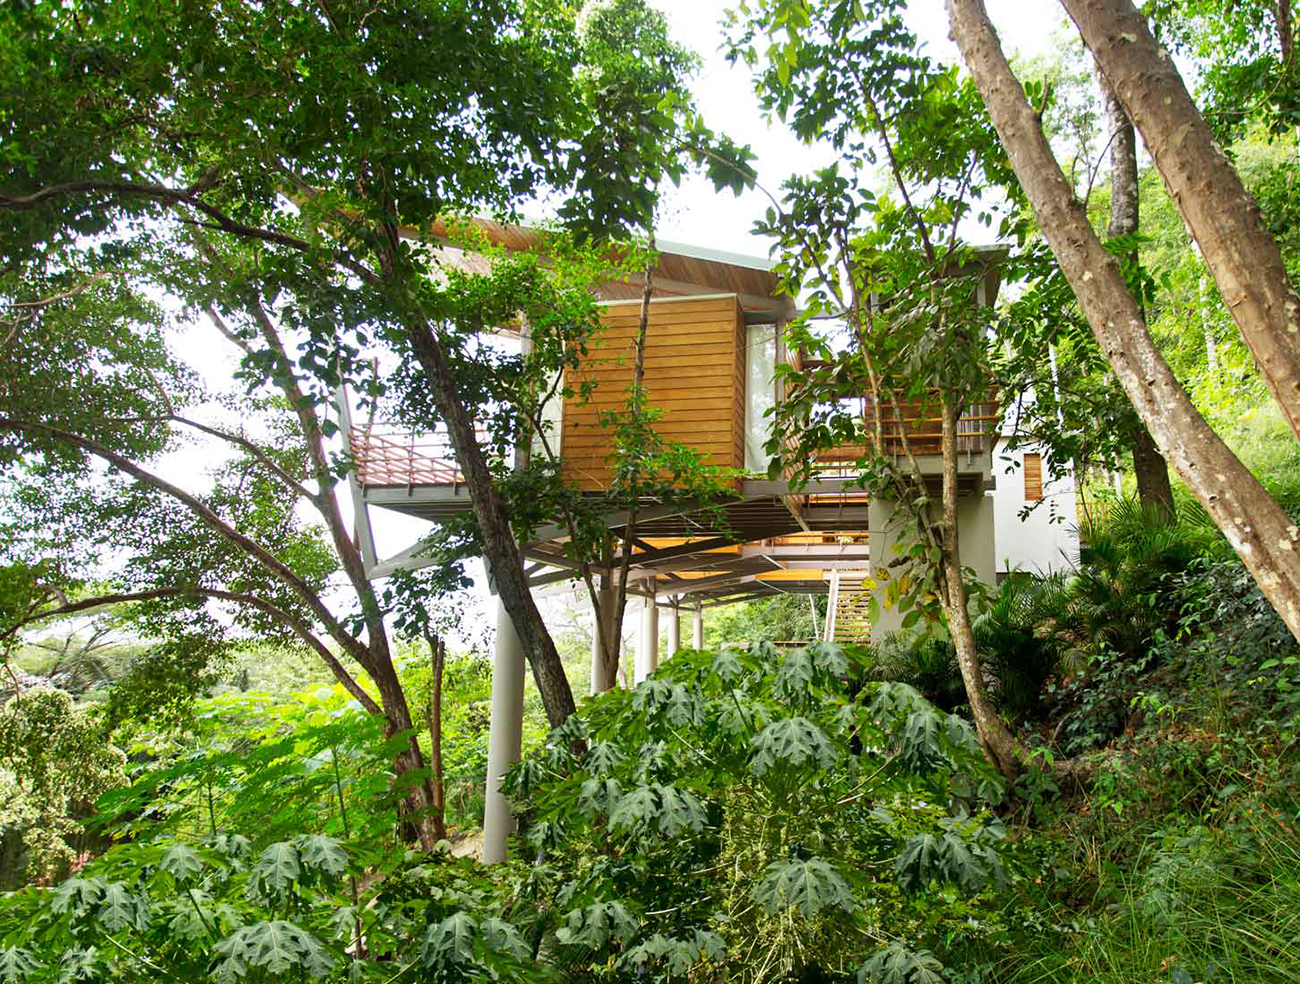 Casa-Flontanta-Costa-Rica-Treehouse-Benjamin-Garcia-Saxe-8.jpg